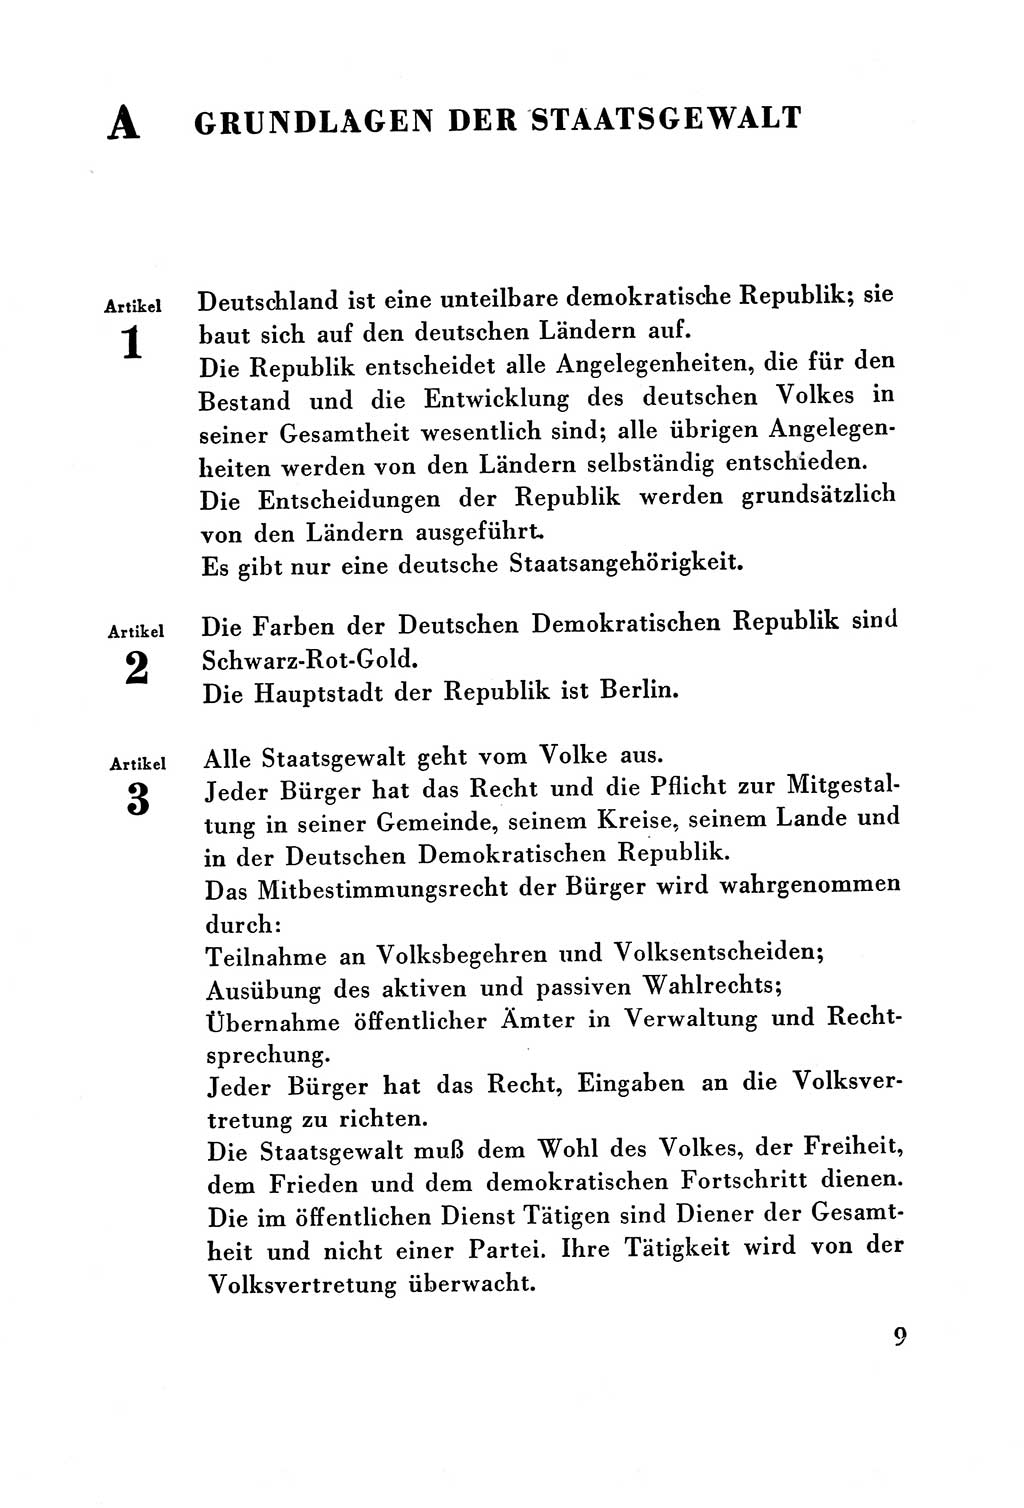 Verfassung der Deutschen Demokratischen Republik (DDR) vom 7. Oktober 1949, Seite 9 (Verf. DDR 1949, S. 9)